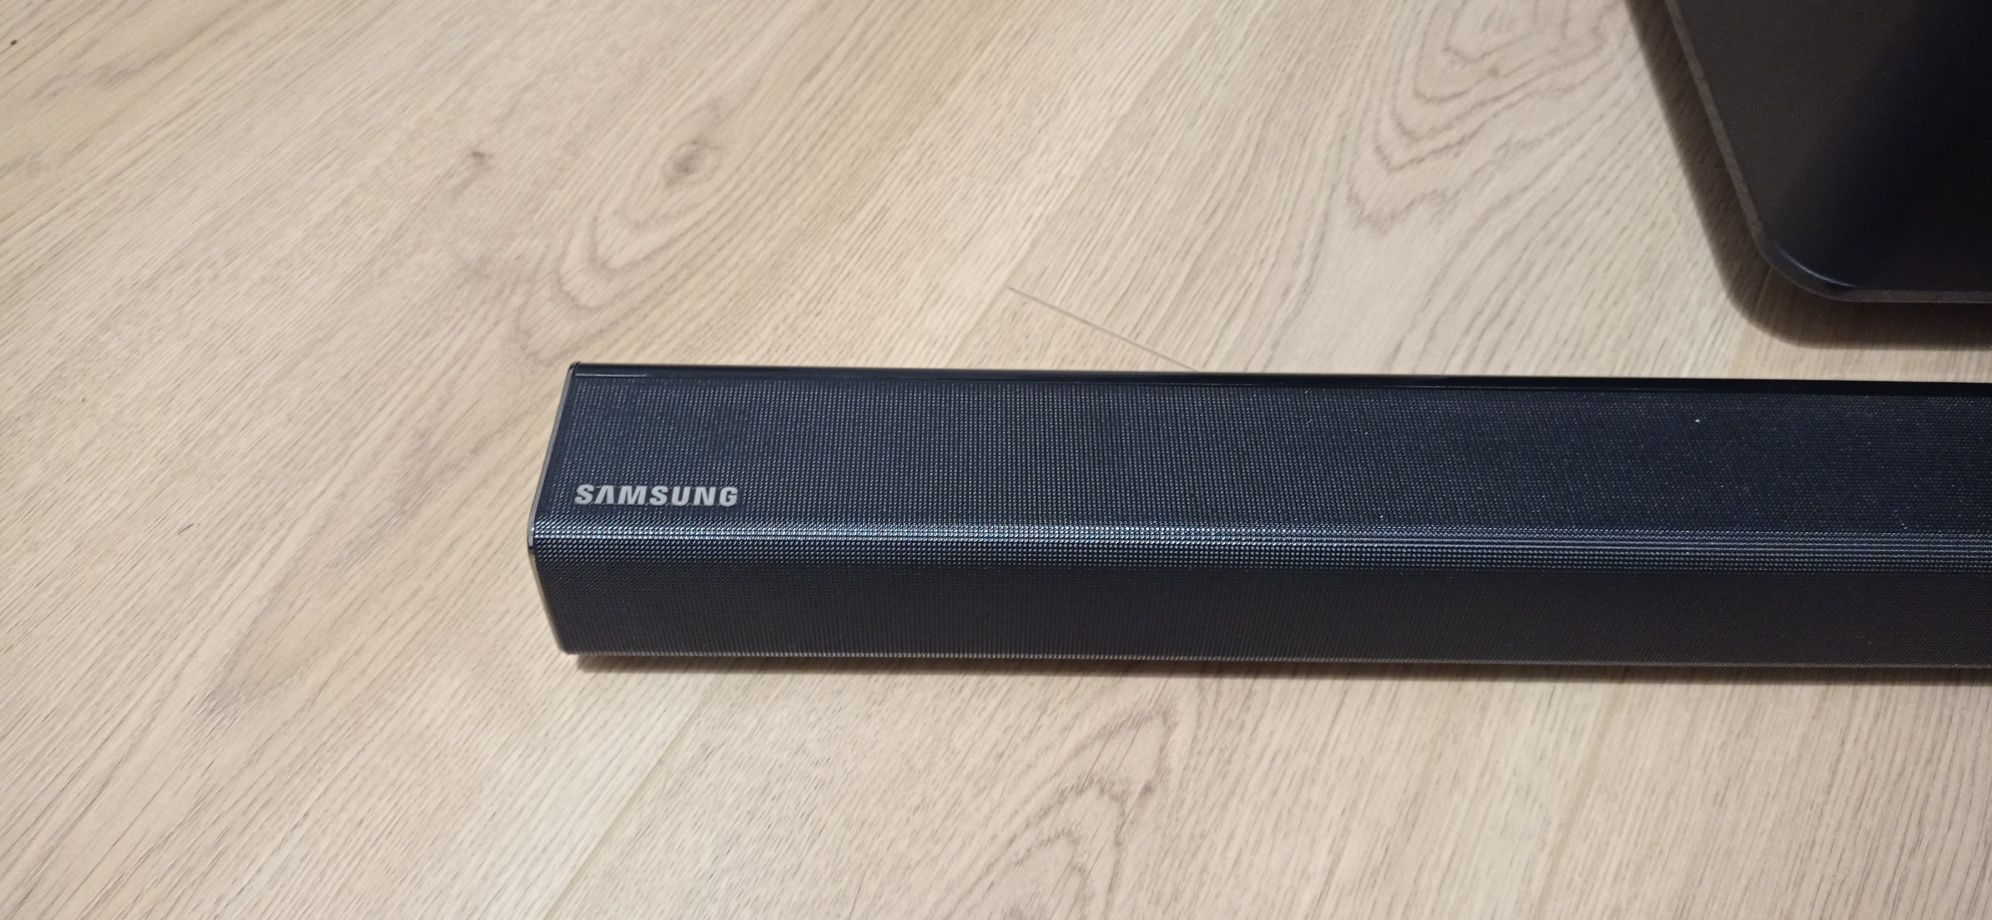 Soundbaru Samsung